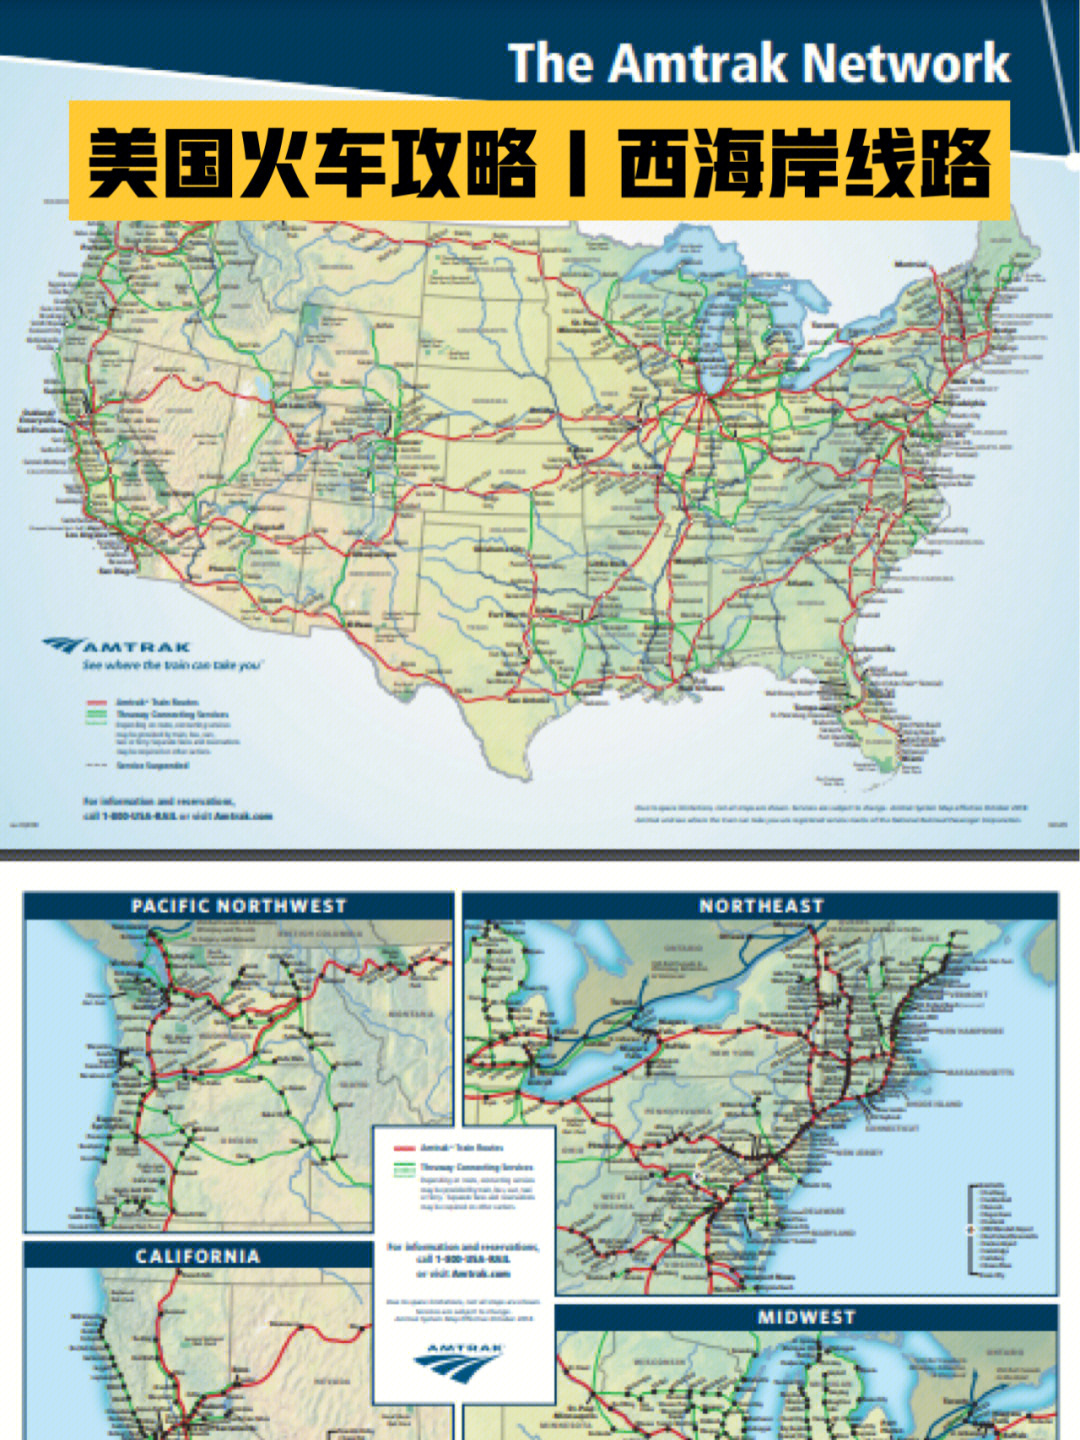 美国铁路路线图图片